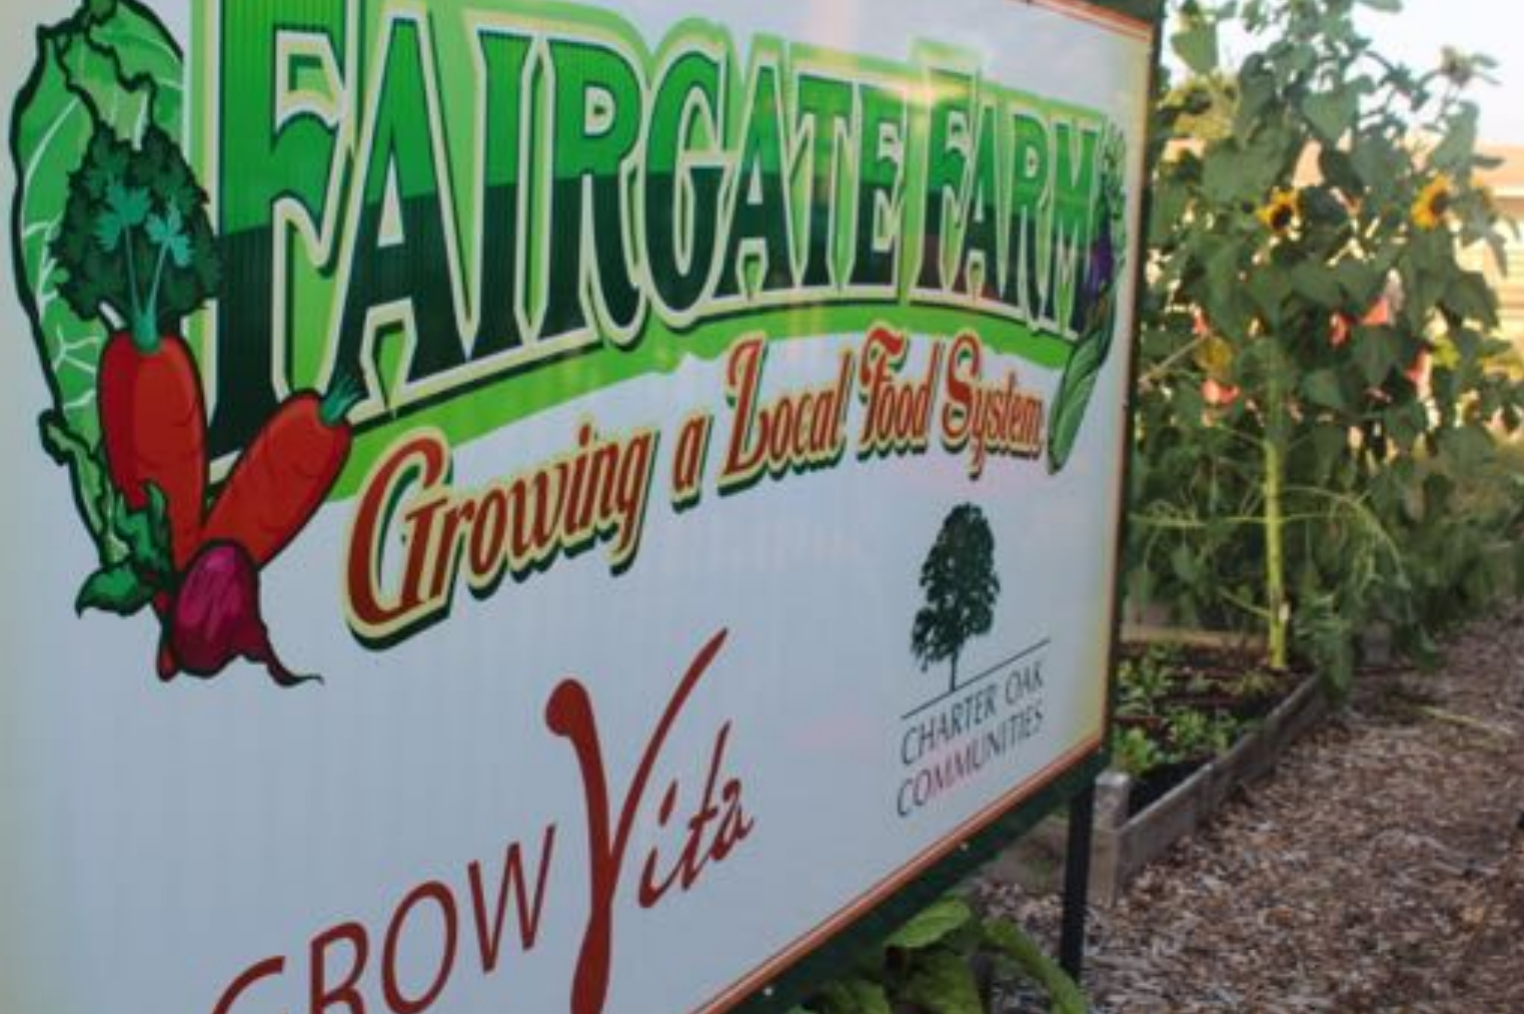 Fairgate Farm Slideshow